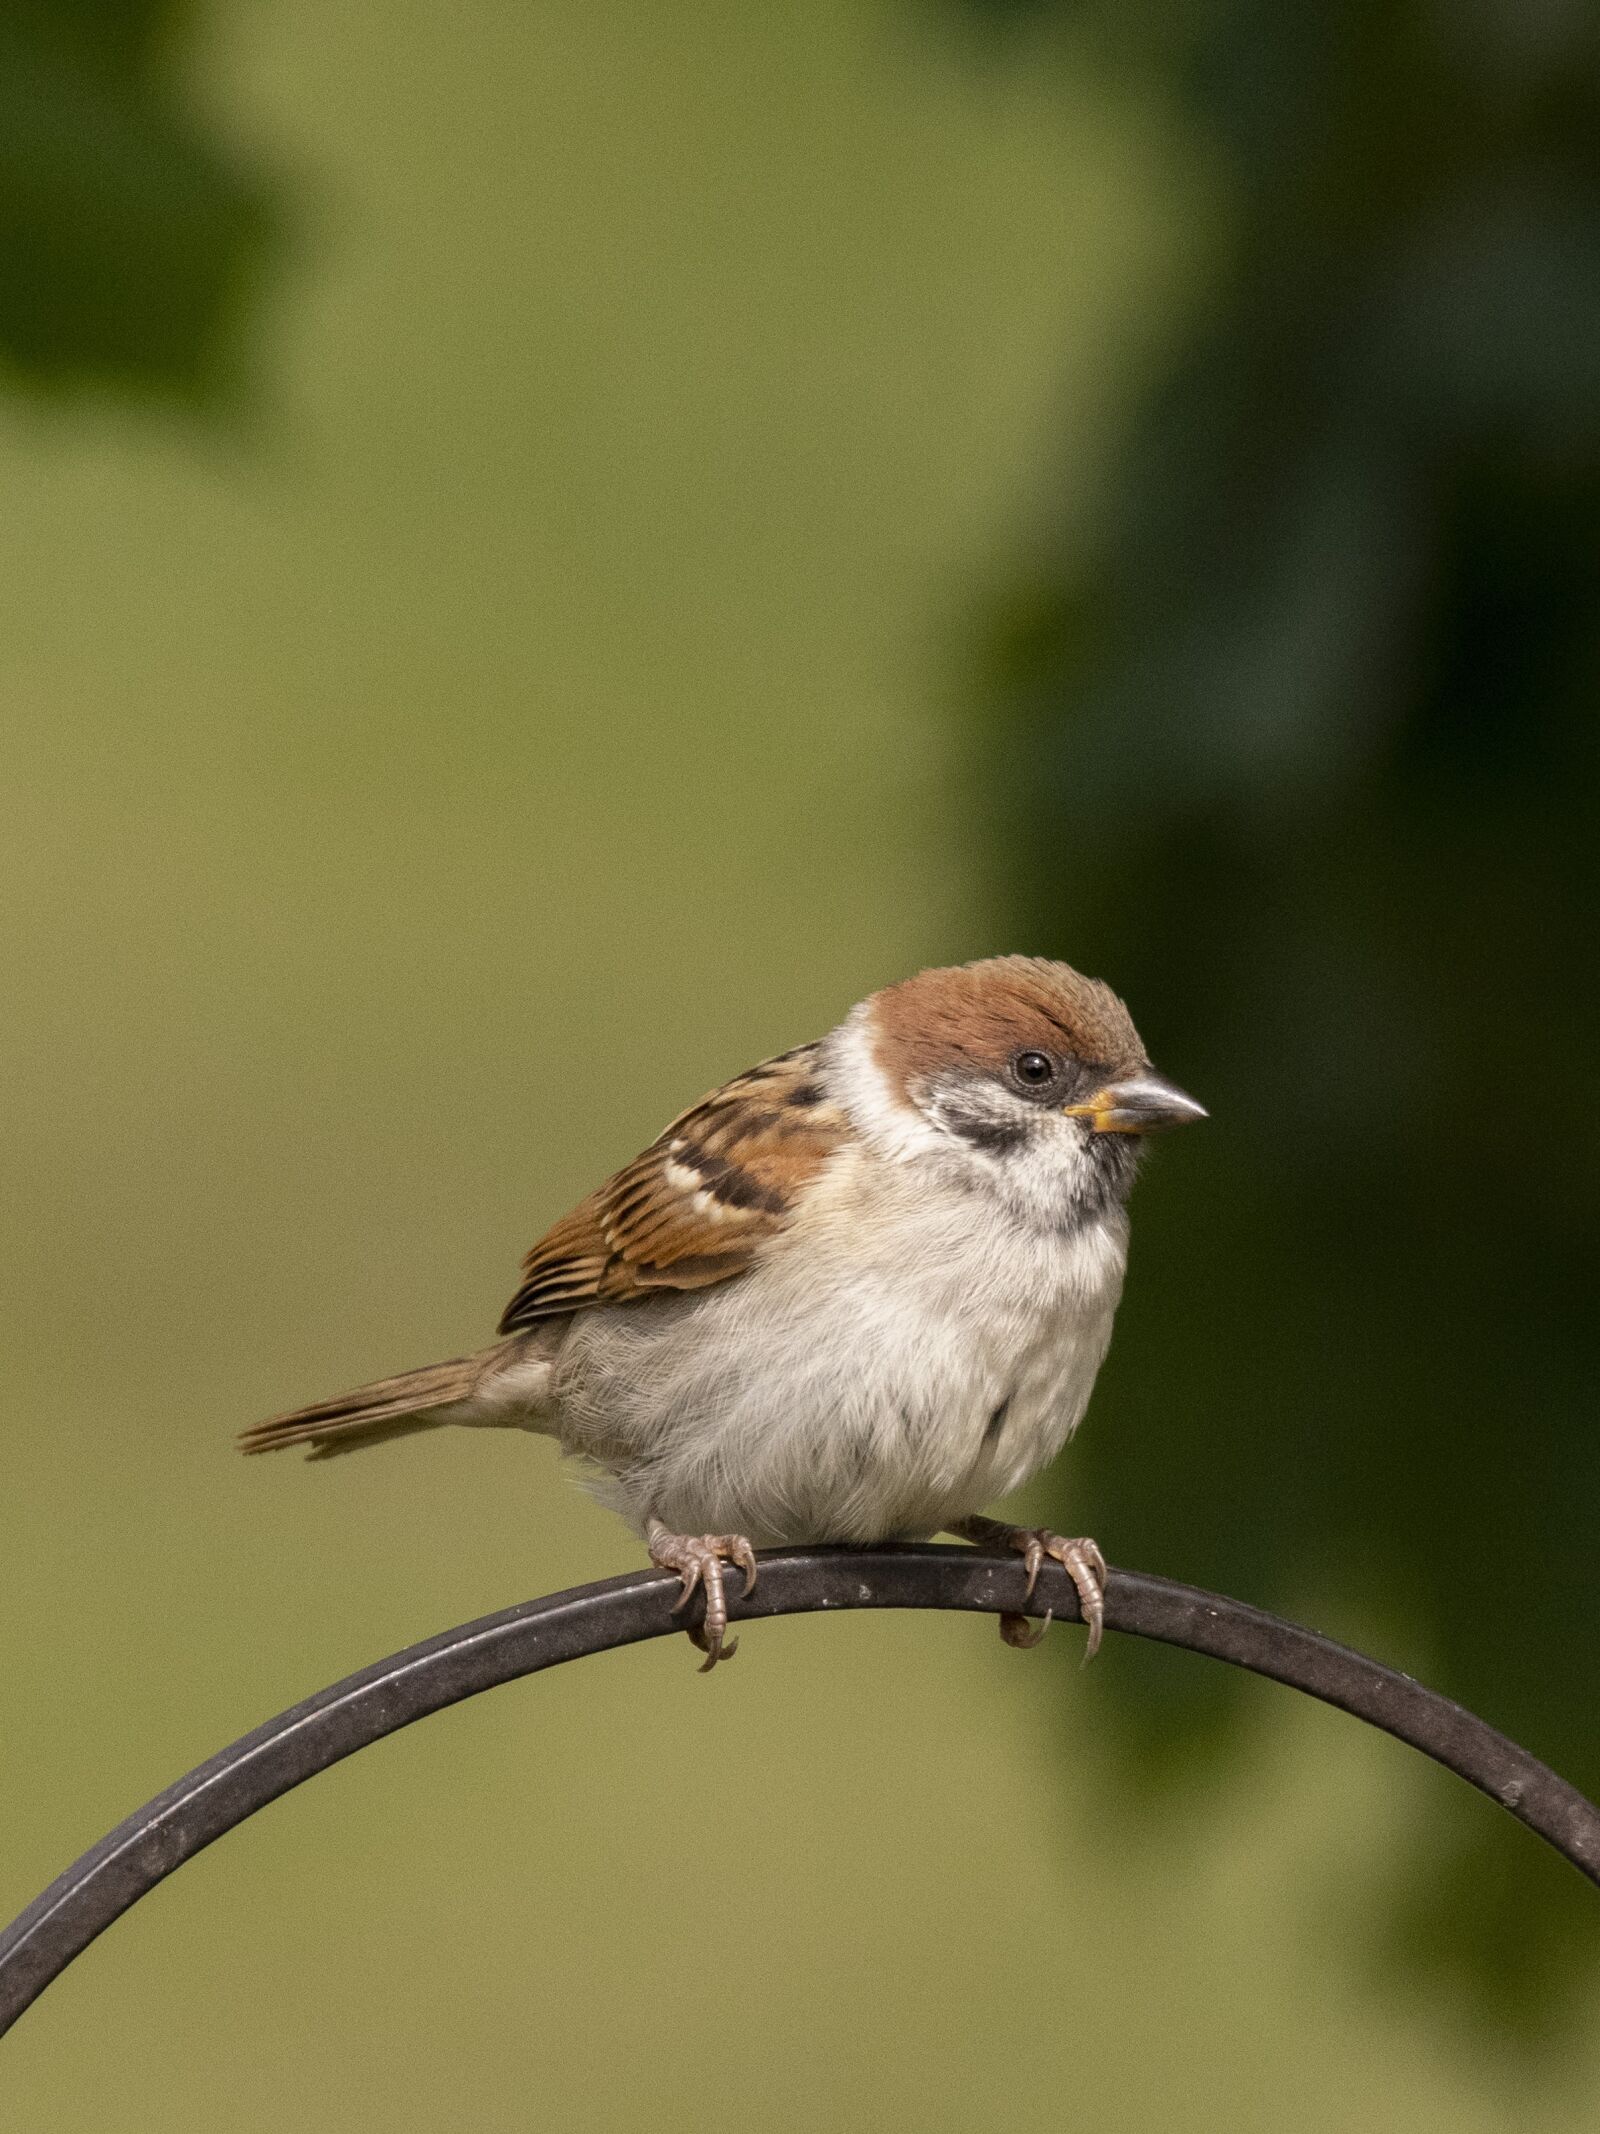 Nikon D500 sample photo. Sparrow, bird, nature photography